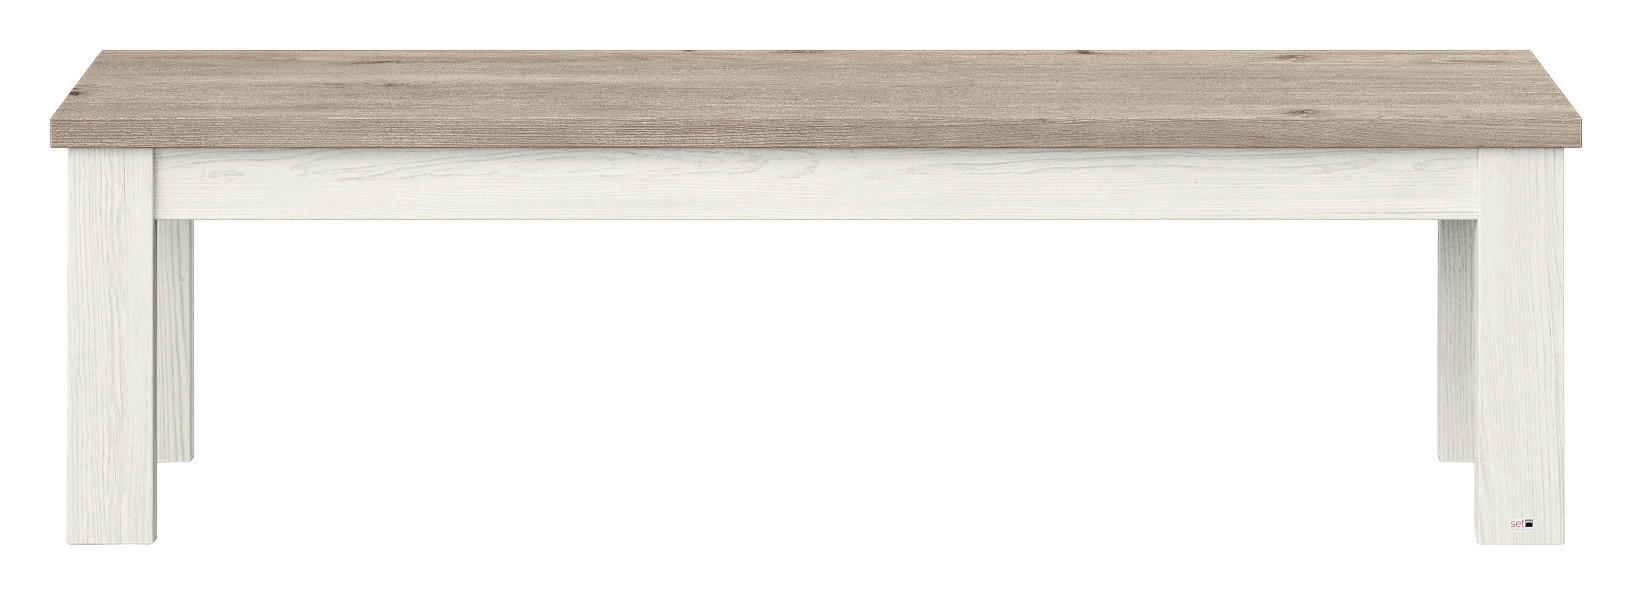 SITZBANK Weiß, Eichefarben  - Eichefarben/Weiß, Design (160/45/43cm) - SetOne by Musterring